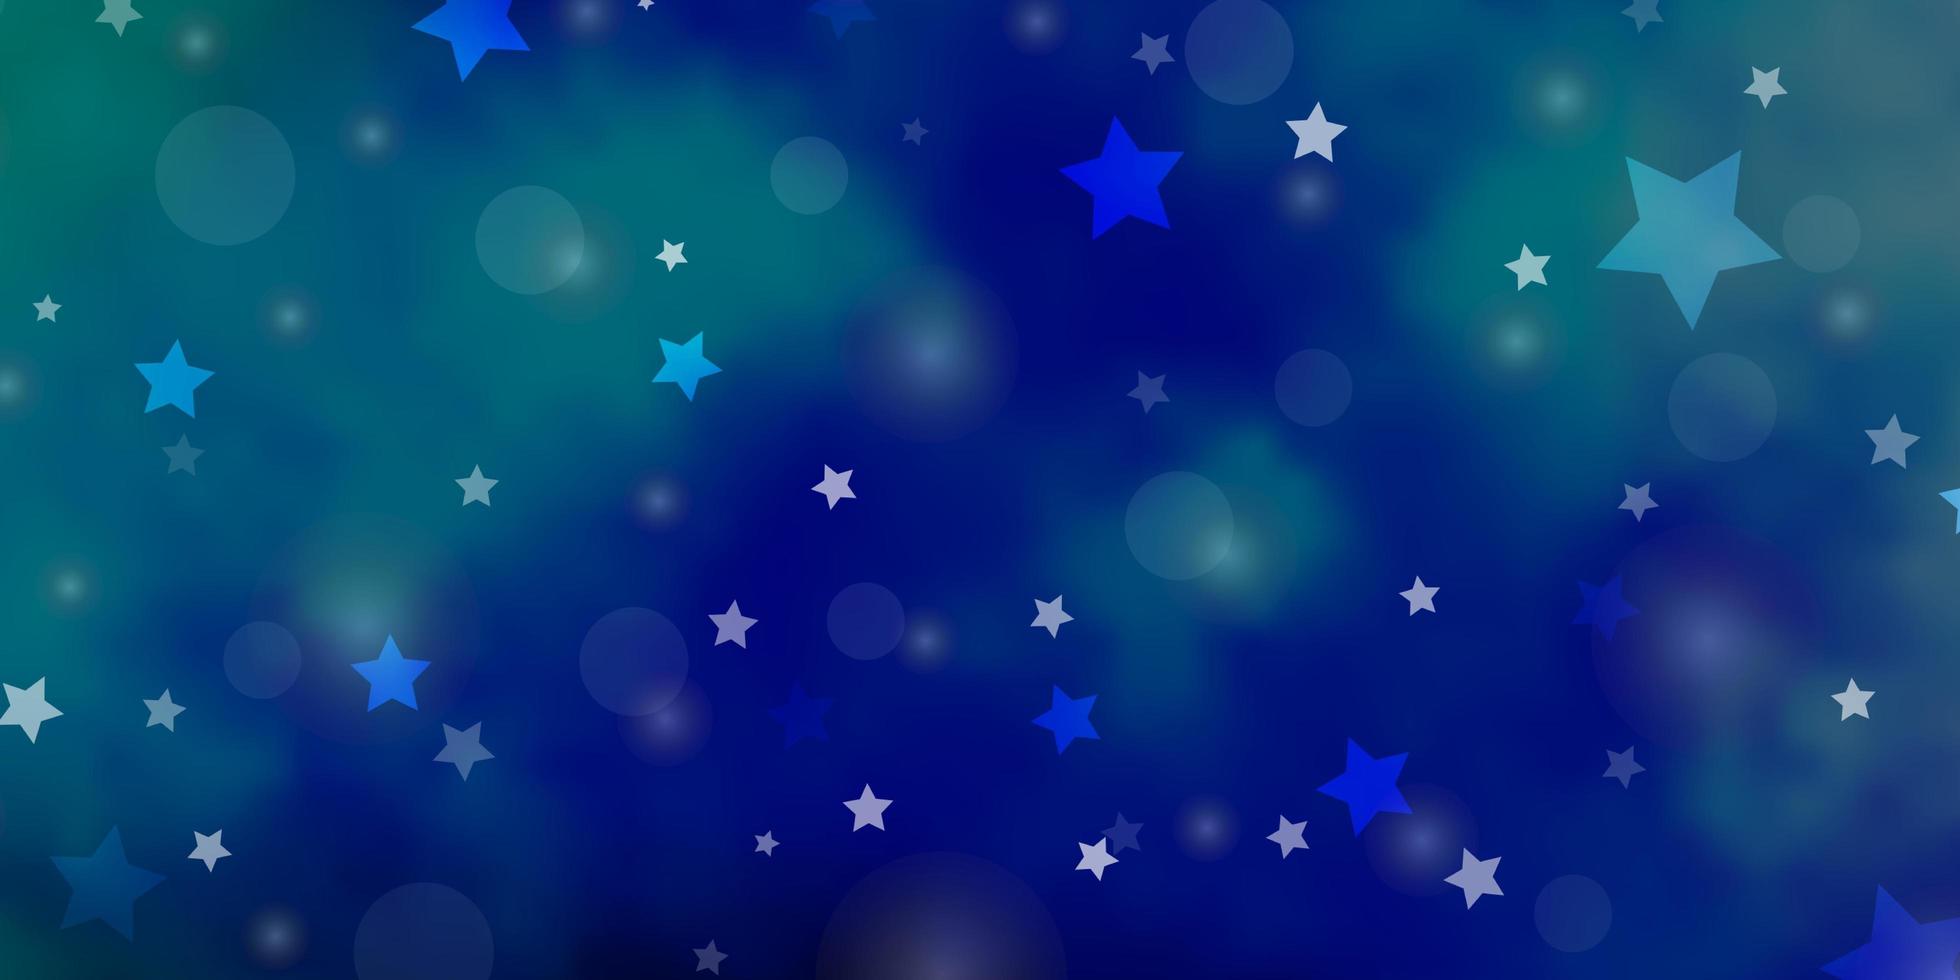 texture vecteur bleu clair et vert avec des cercles, des étoiles. illustration avec ensemble de sphères abstraites colorées, étoiles. motif pour tissu à la mode, papiers peints.